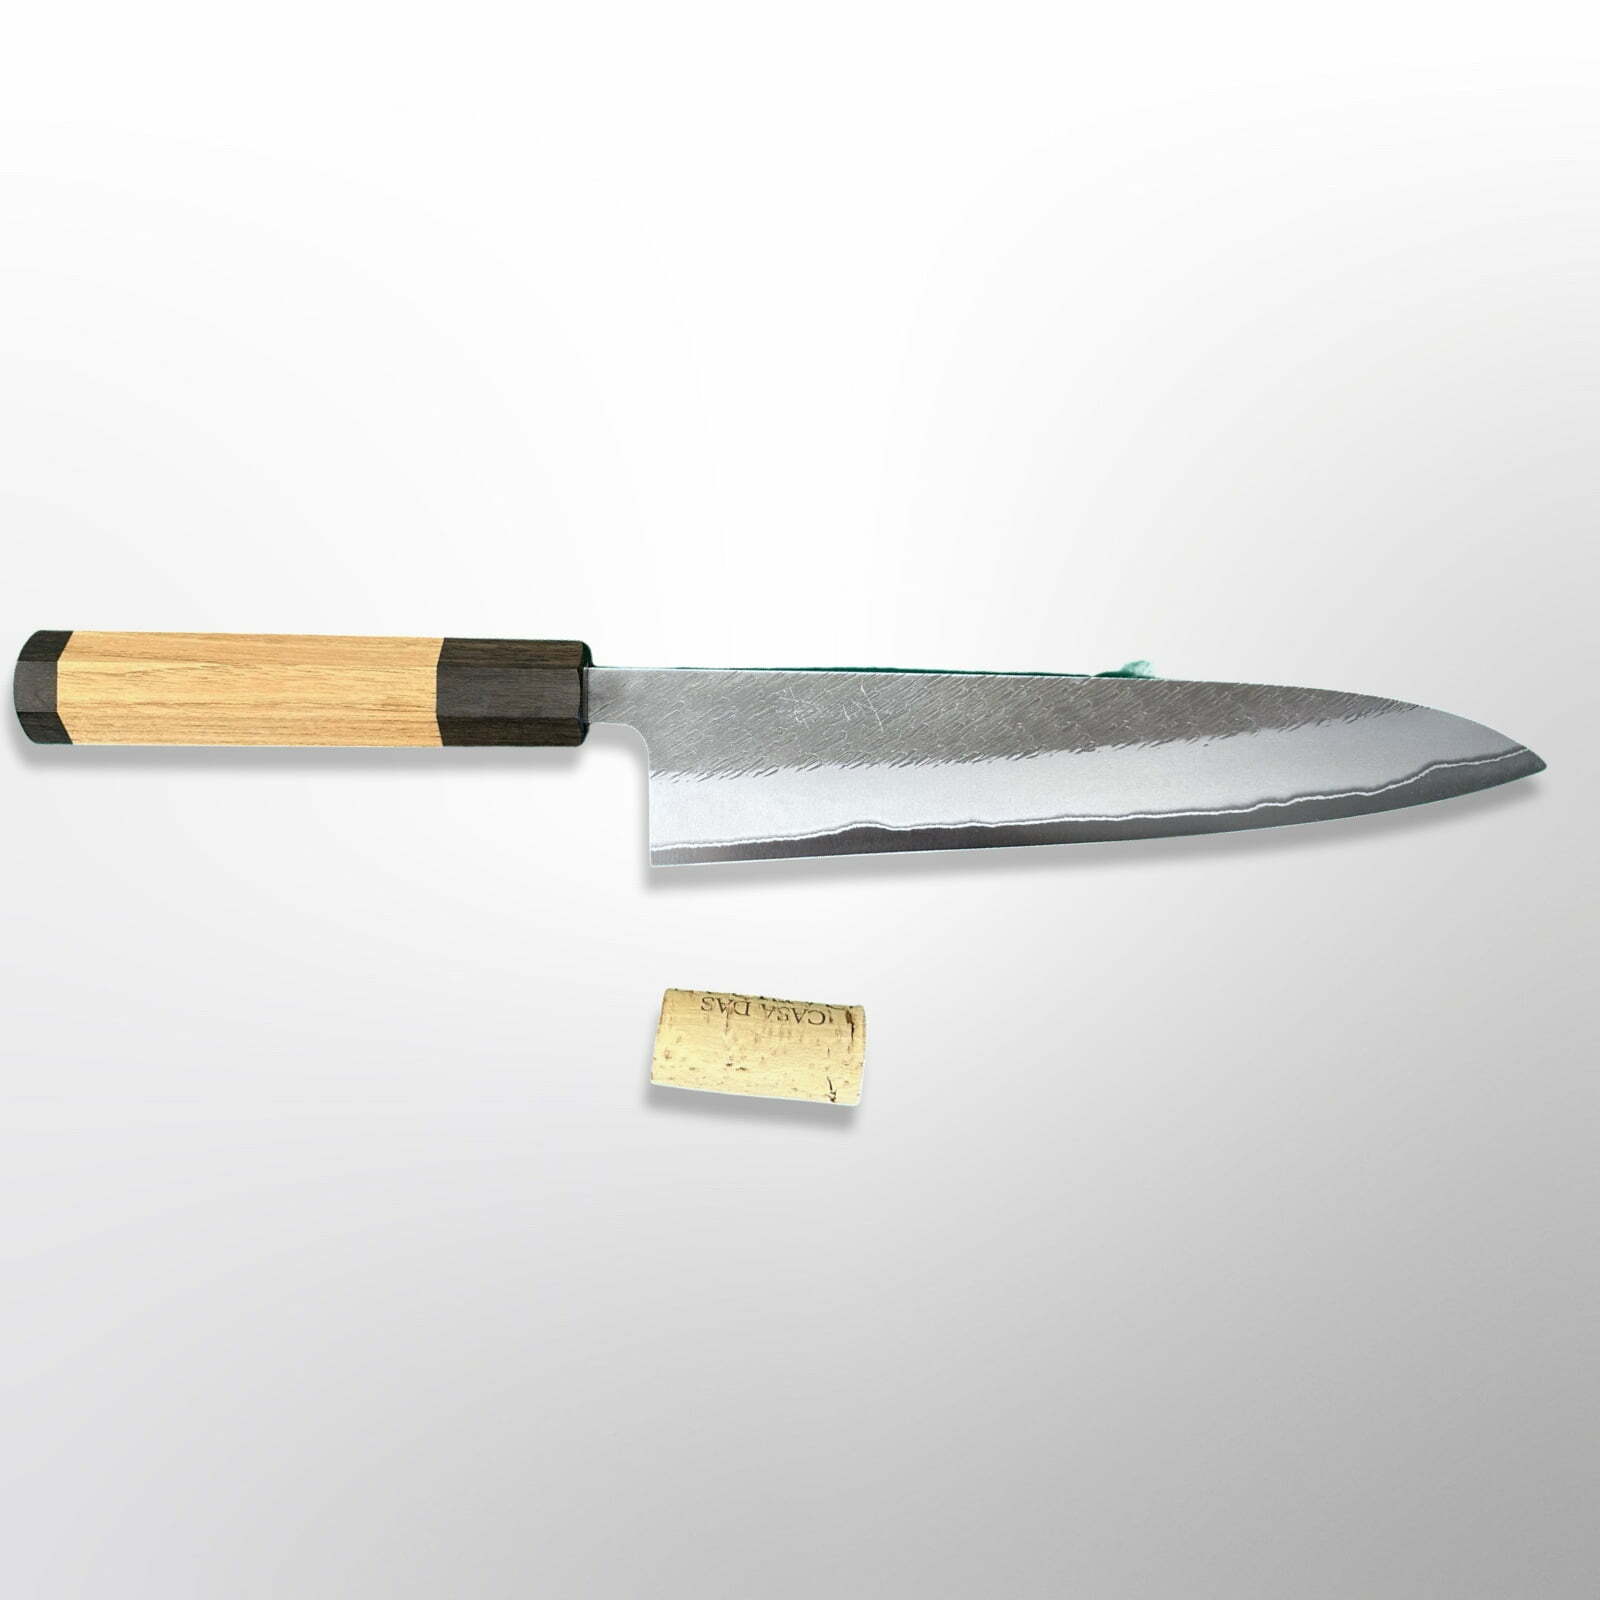 סכין שף רב-תכליתית גִּיוּטוֹ 210מ״מ מחושלת בעבודת יד 3 שכבות: פלדת פחמן יפנית מתקדמת מסוג Shirogami #2 גימור אל-חלד קורואוצ׳י עם ריקוע פטיש יושיקאנה יפן – SKYOSHW1GYU21KT24